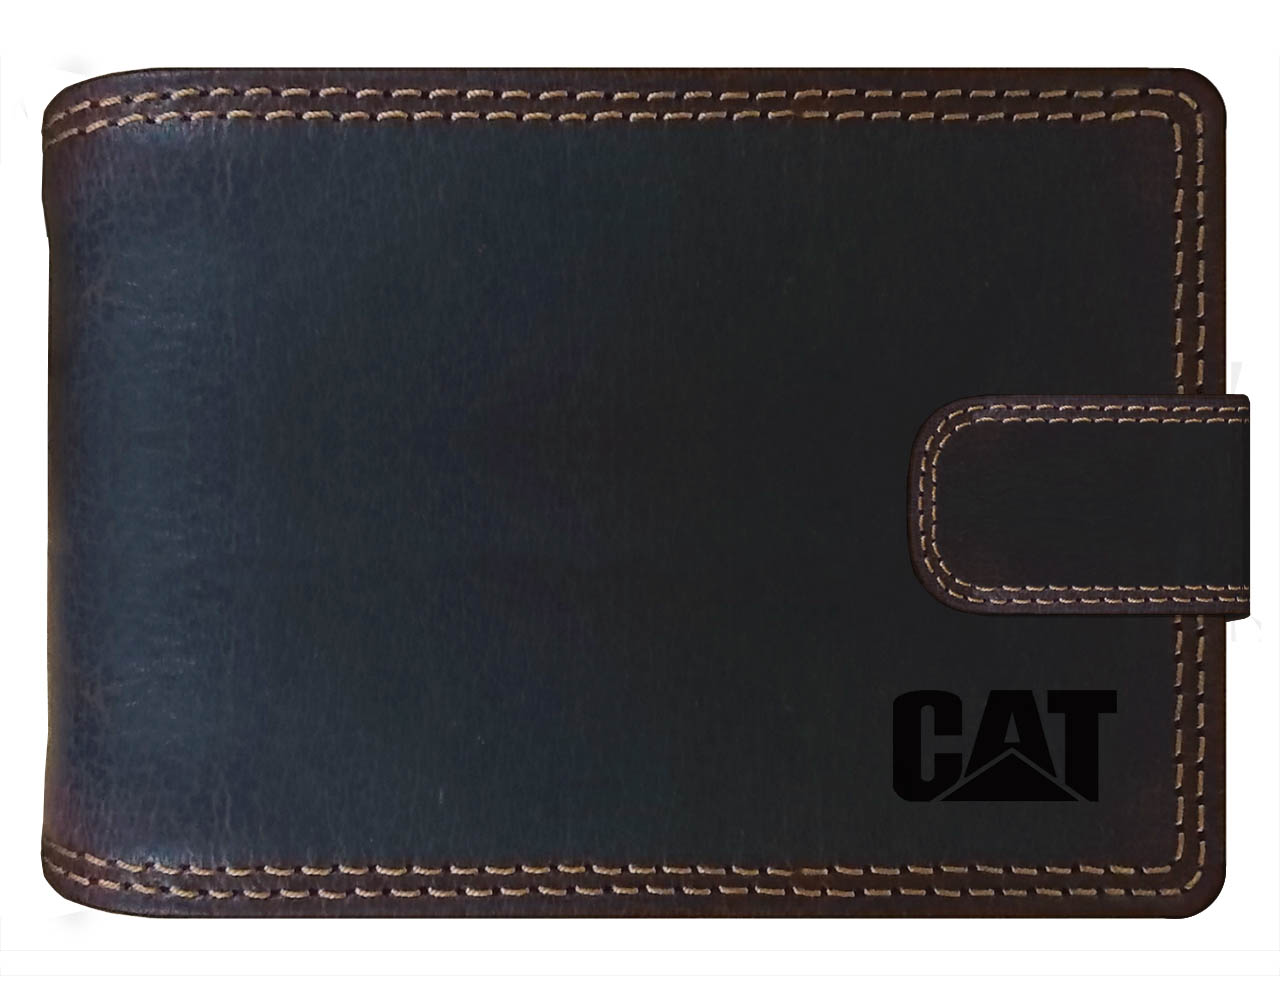 CAT -  kožená pánská peněženka hnědá - RFID